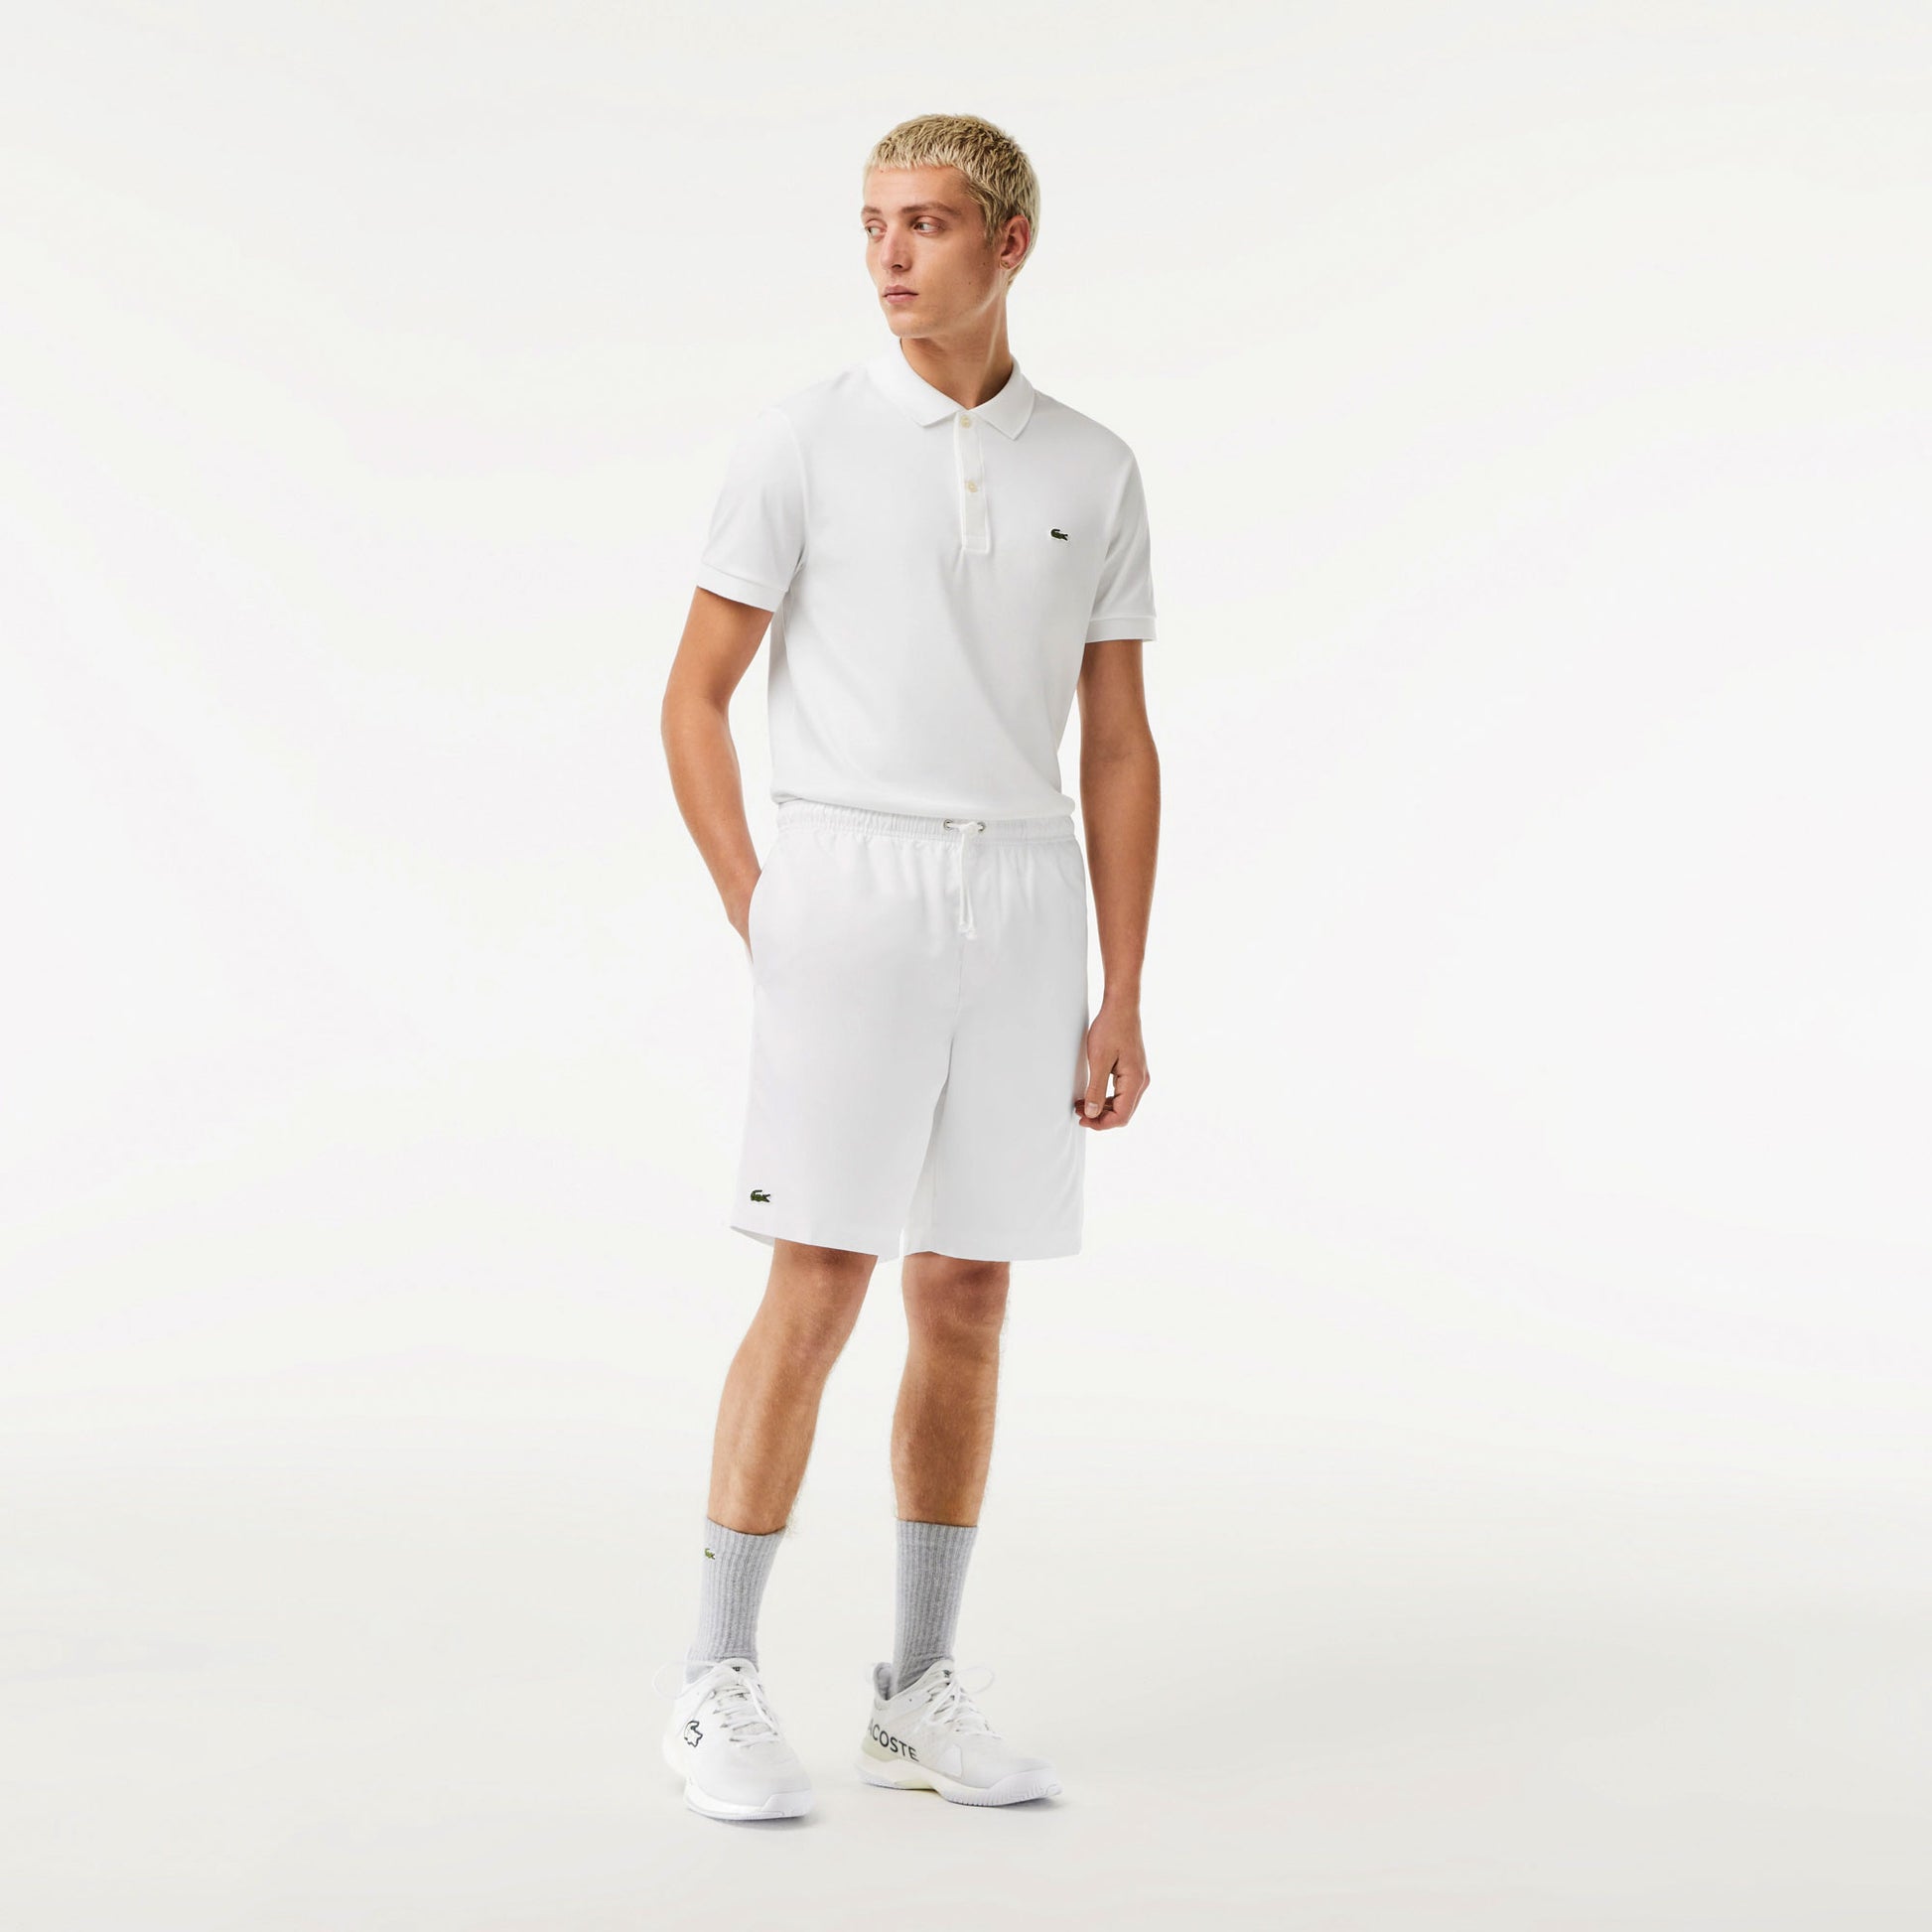 Lacoste Core Men's Tennis Shorts White (4)